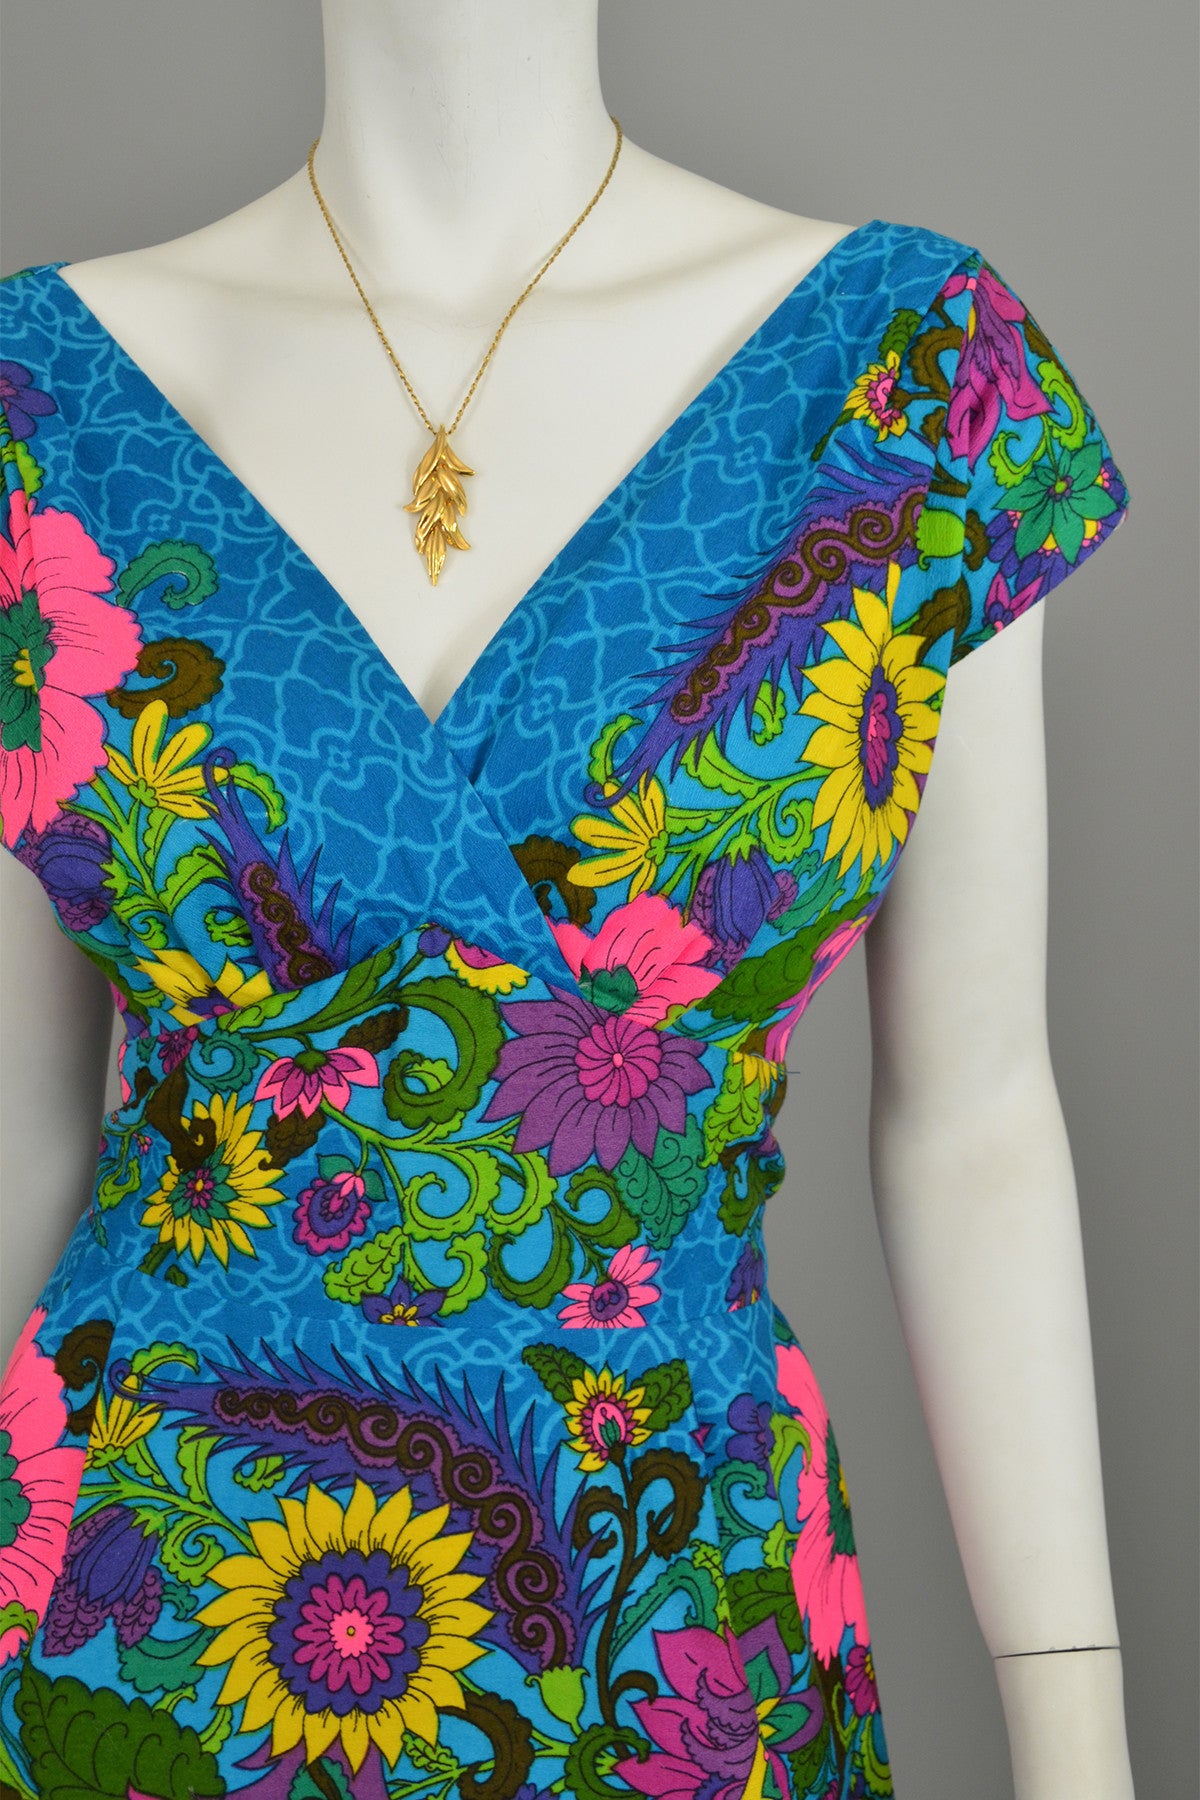 1970s Sunflowers in a Garden Dress Size M/L, Plunging neckline Bust 38", Waist 30"